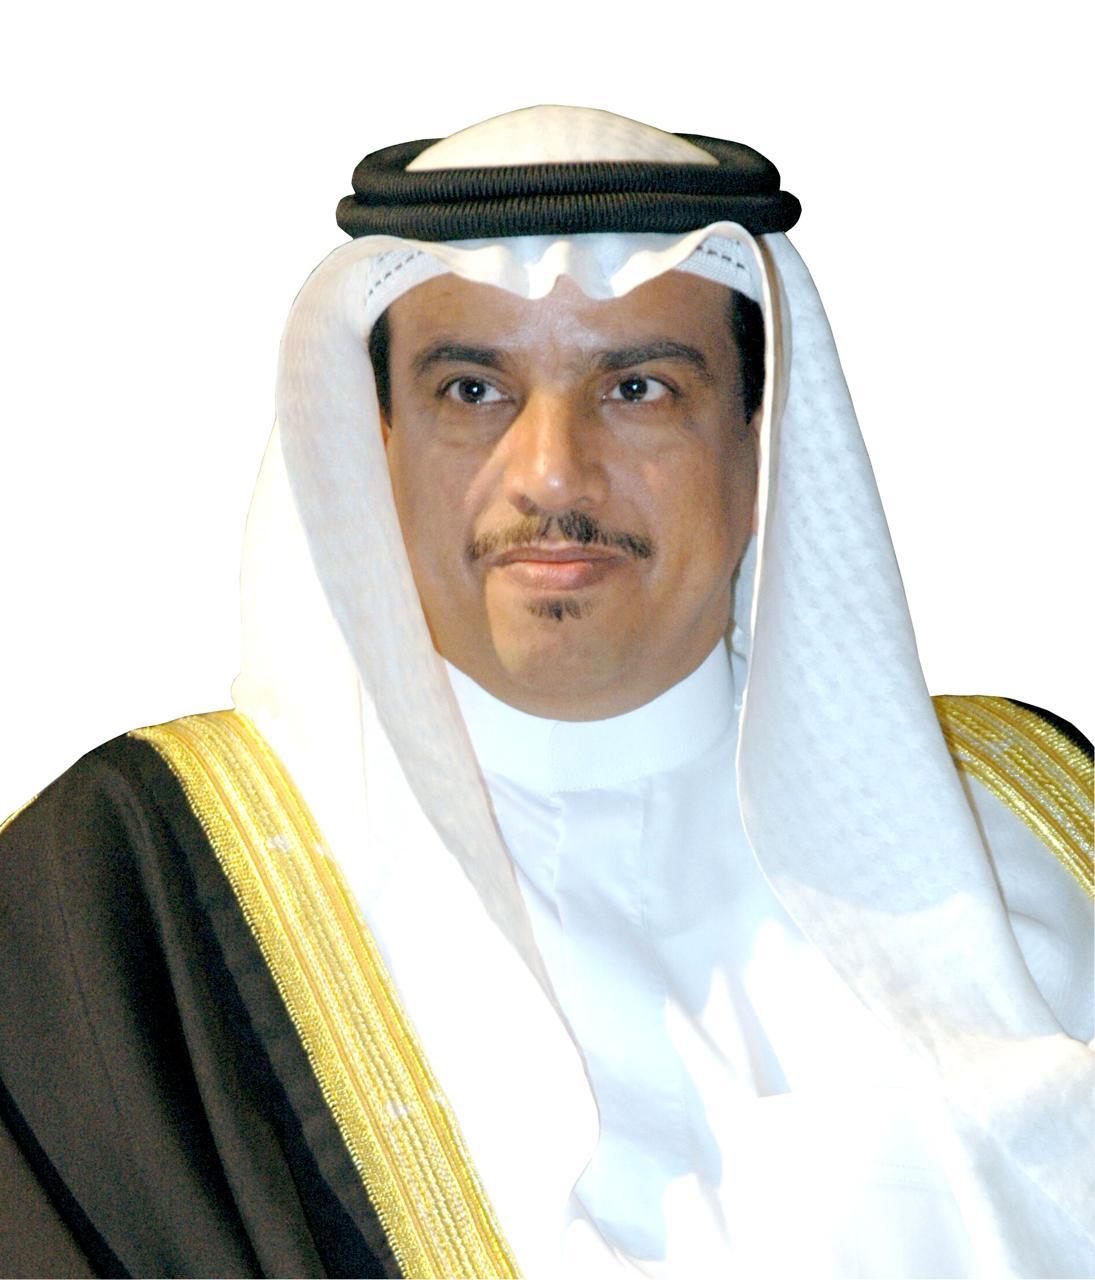 السفير البحريني يشكر السلطنة على التسهيلات لعودة المواطنين البحرينيين إلى أرض الوطن